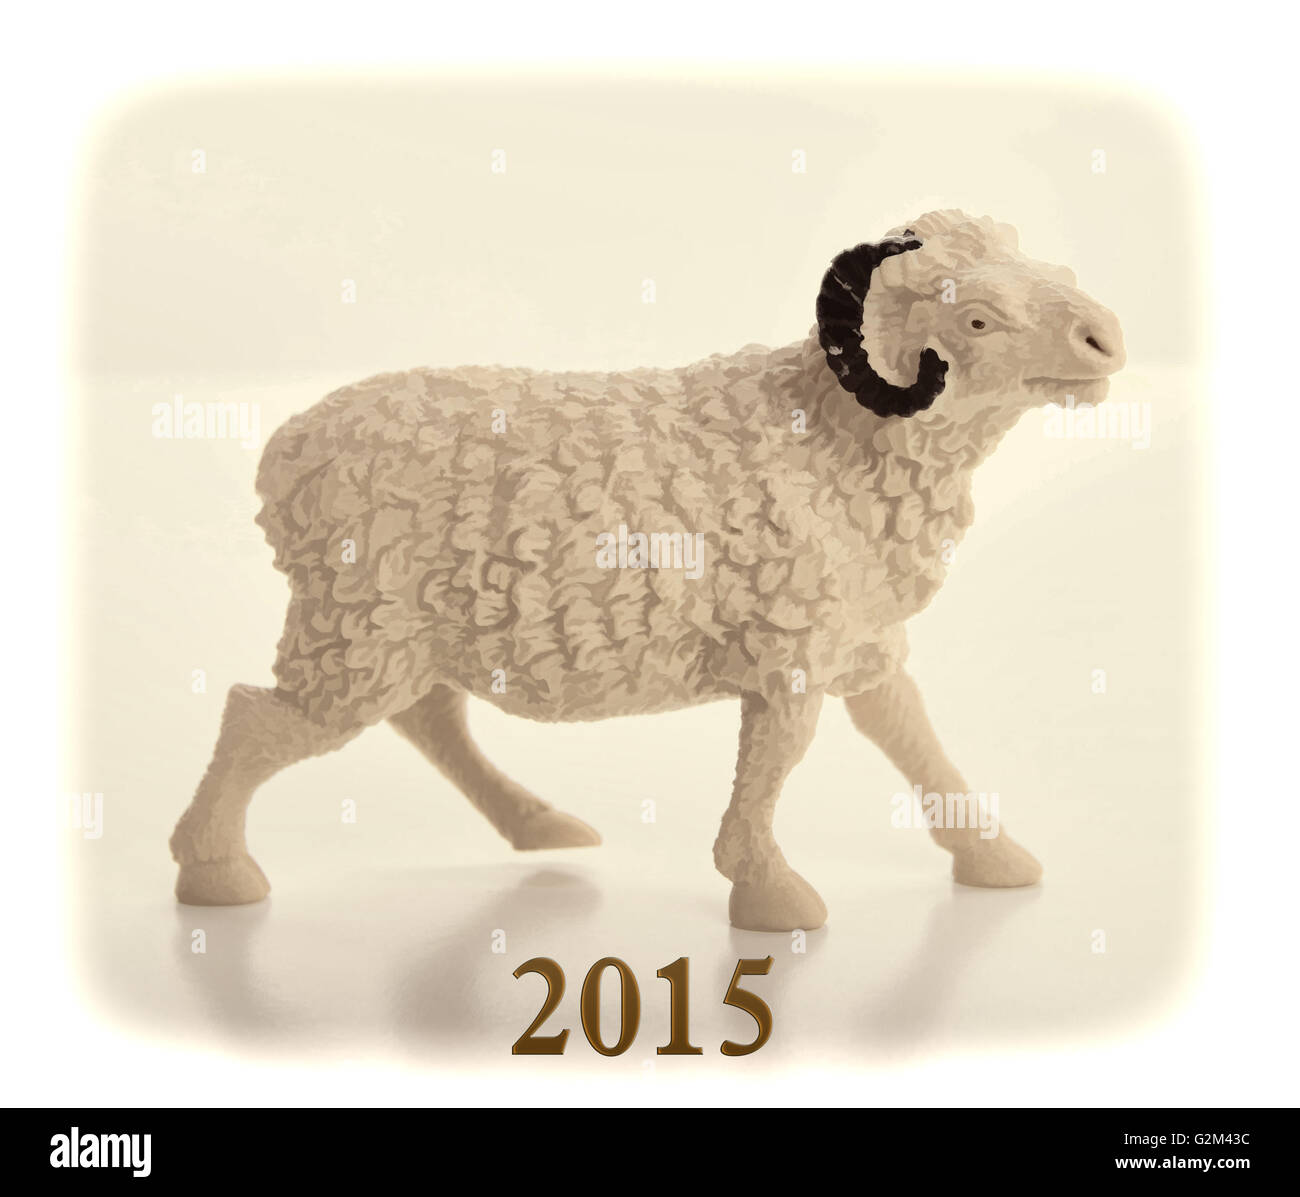 Bonne année 2015 avec des dessins de chèvre Banque D'Images